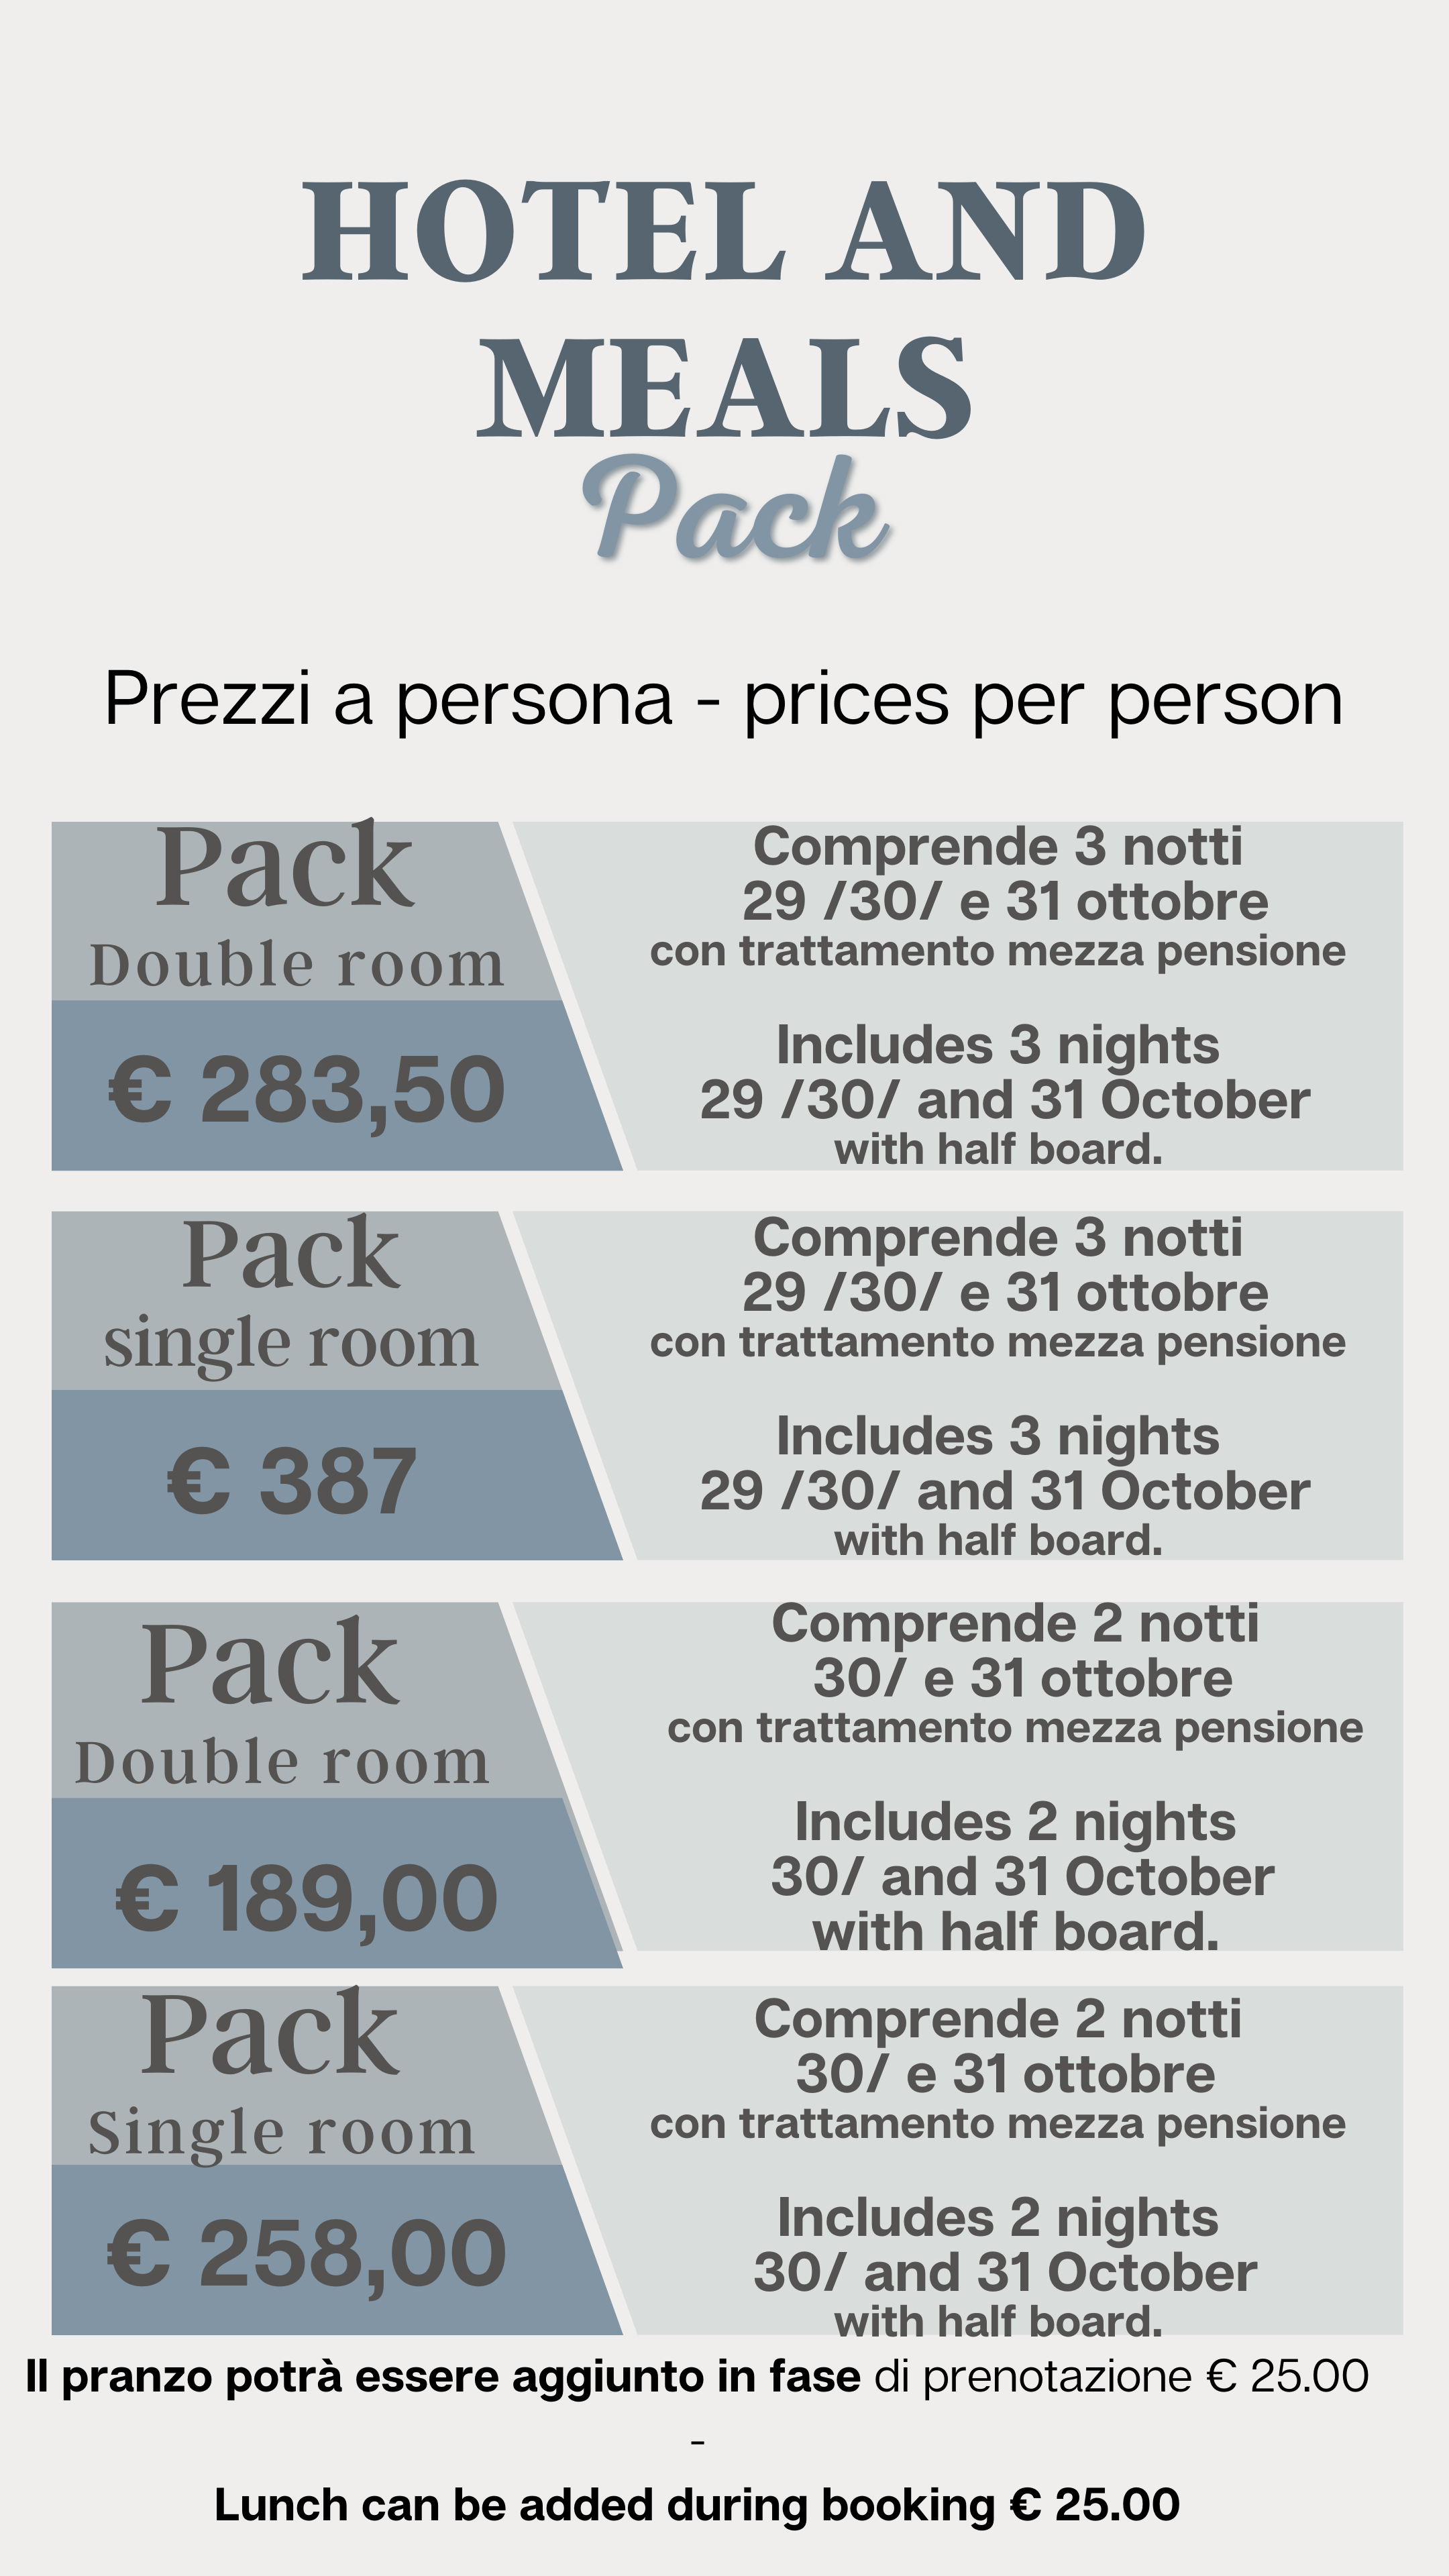 prices per person